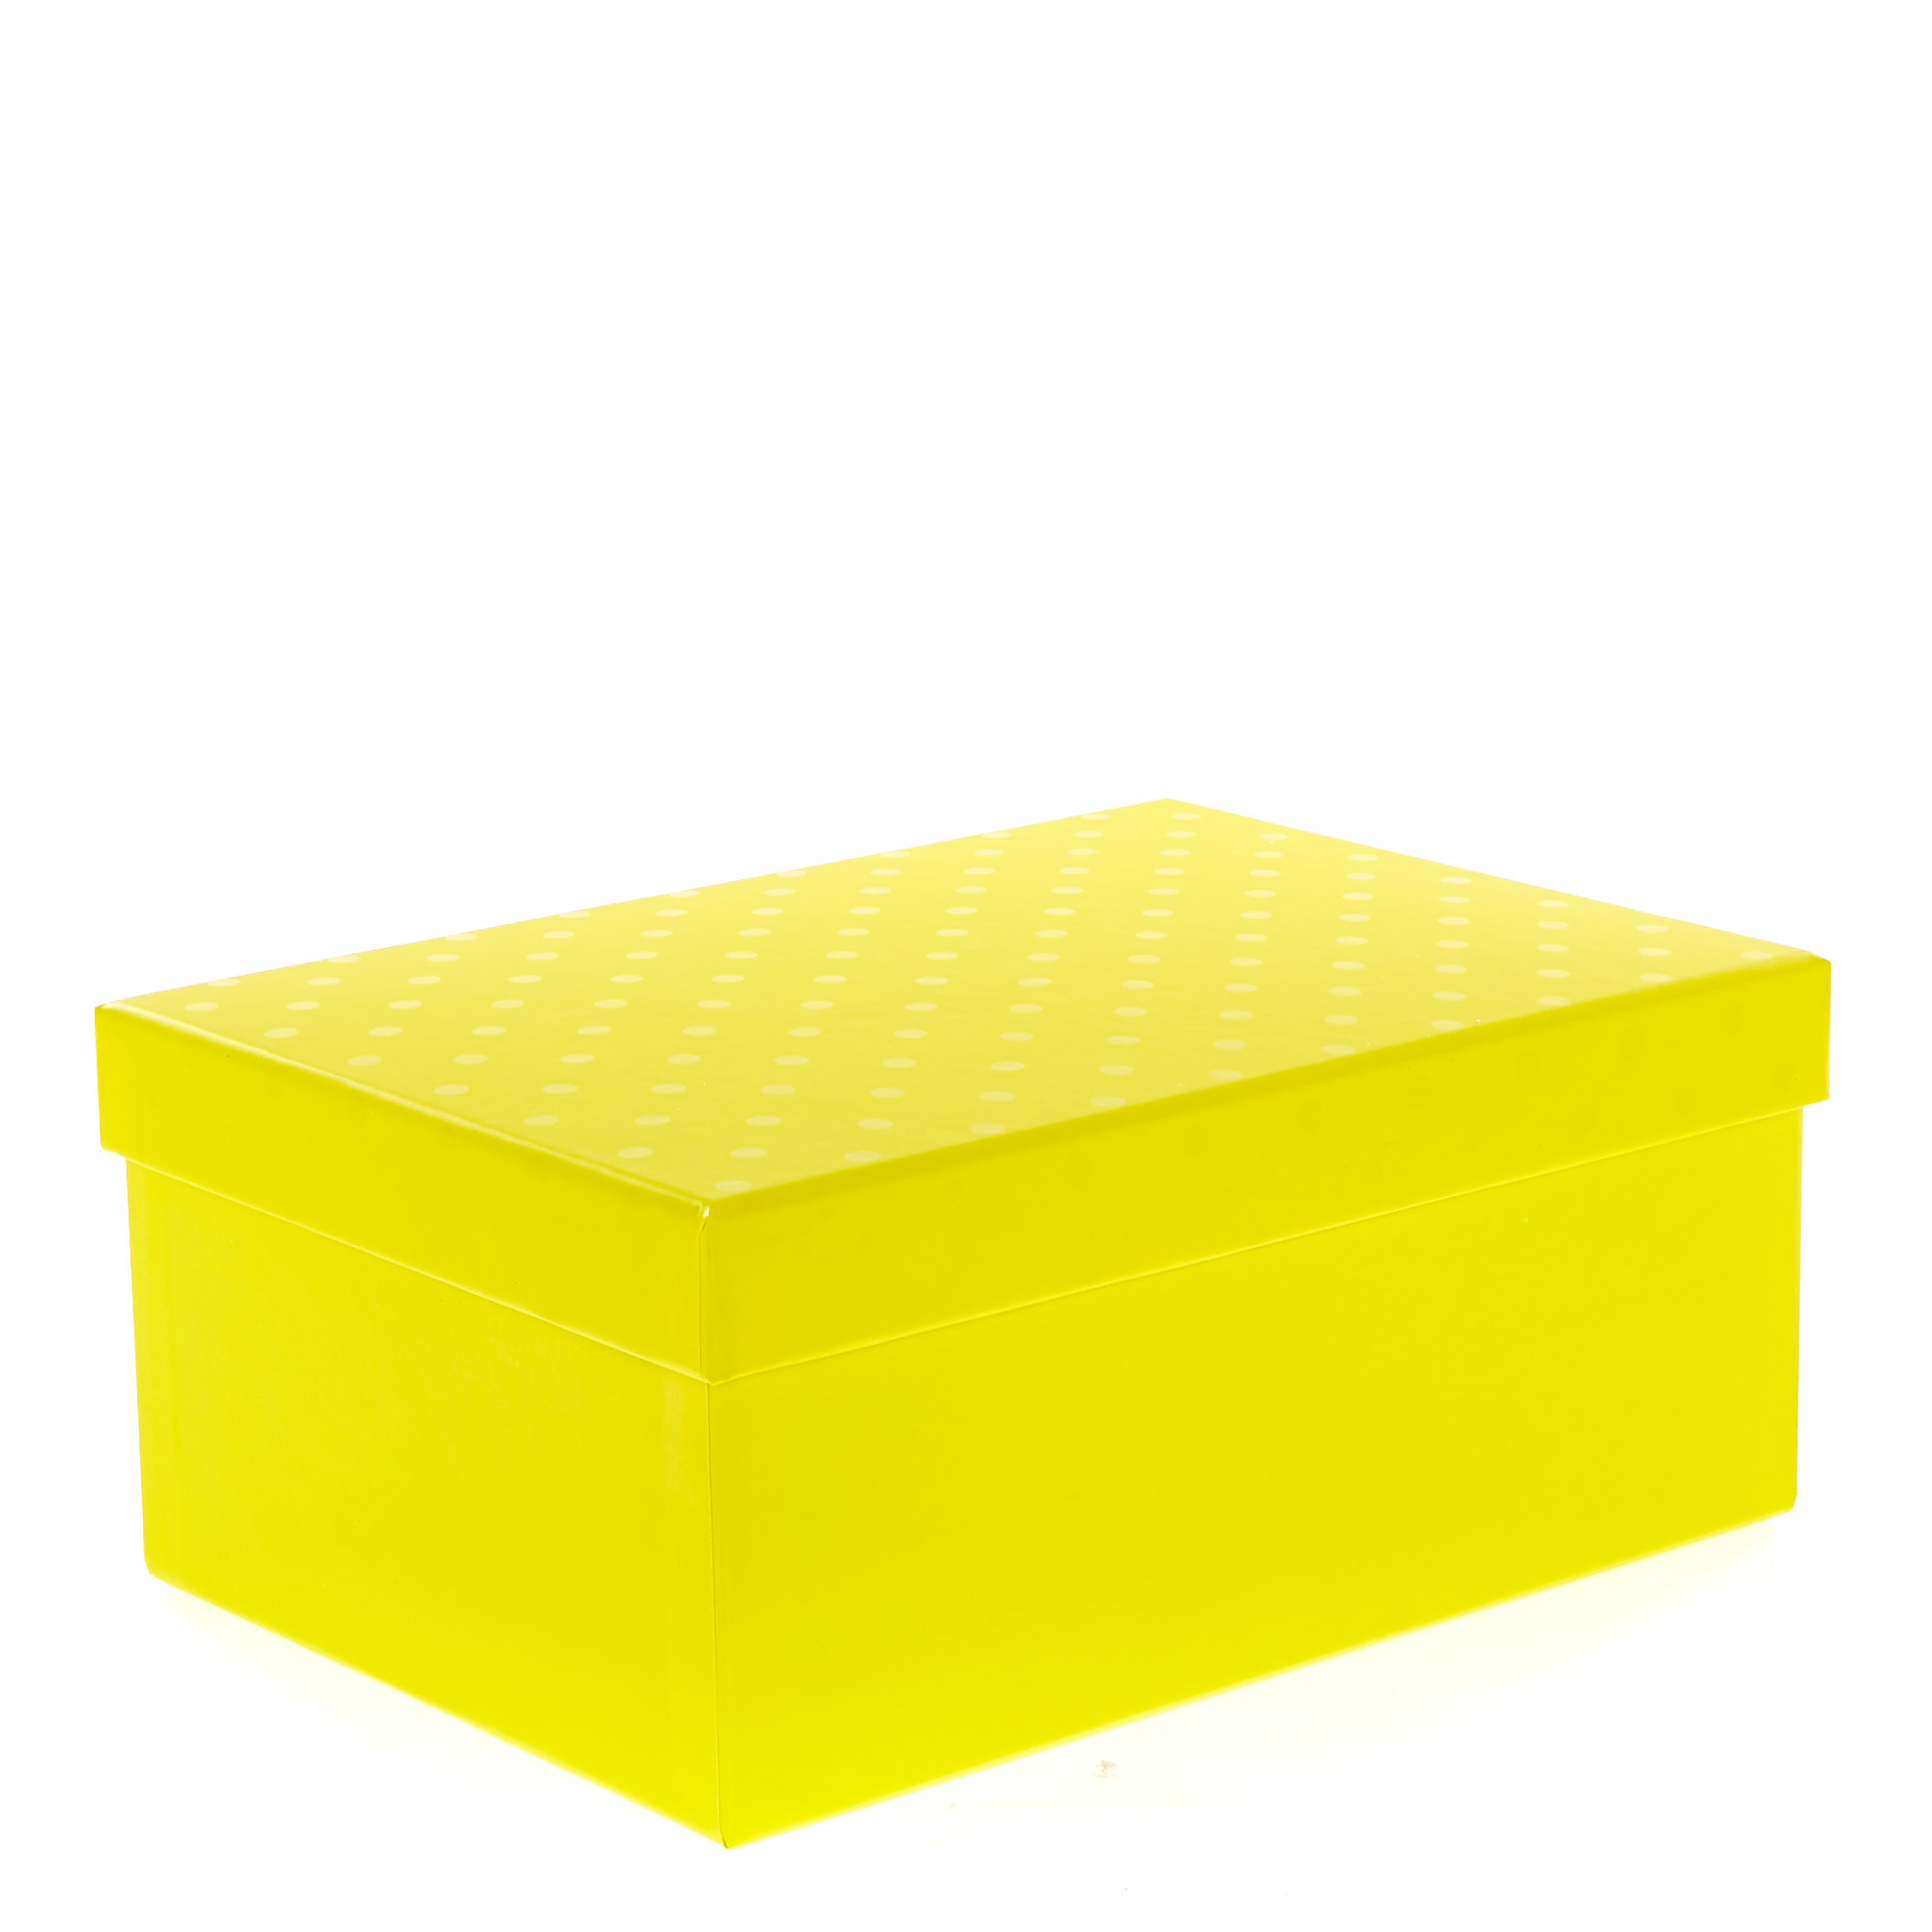 Yellow Polka Dot Gift Boxes - Set of 3